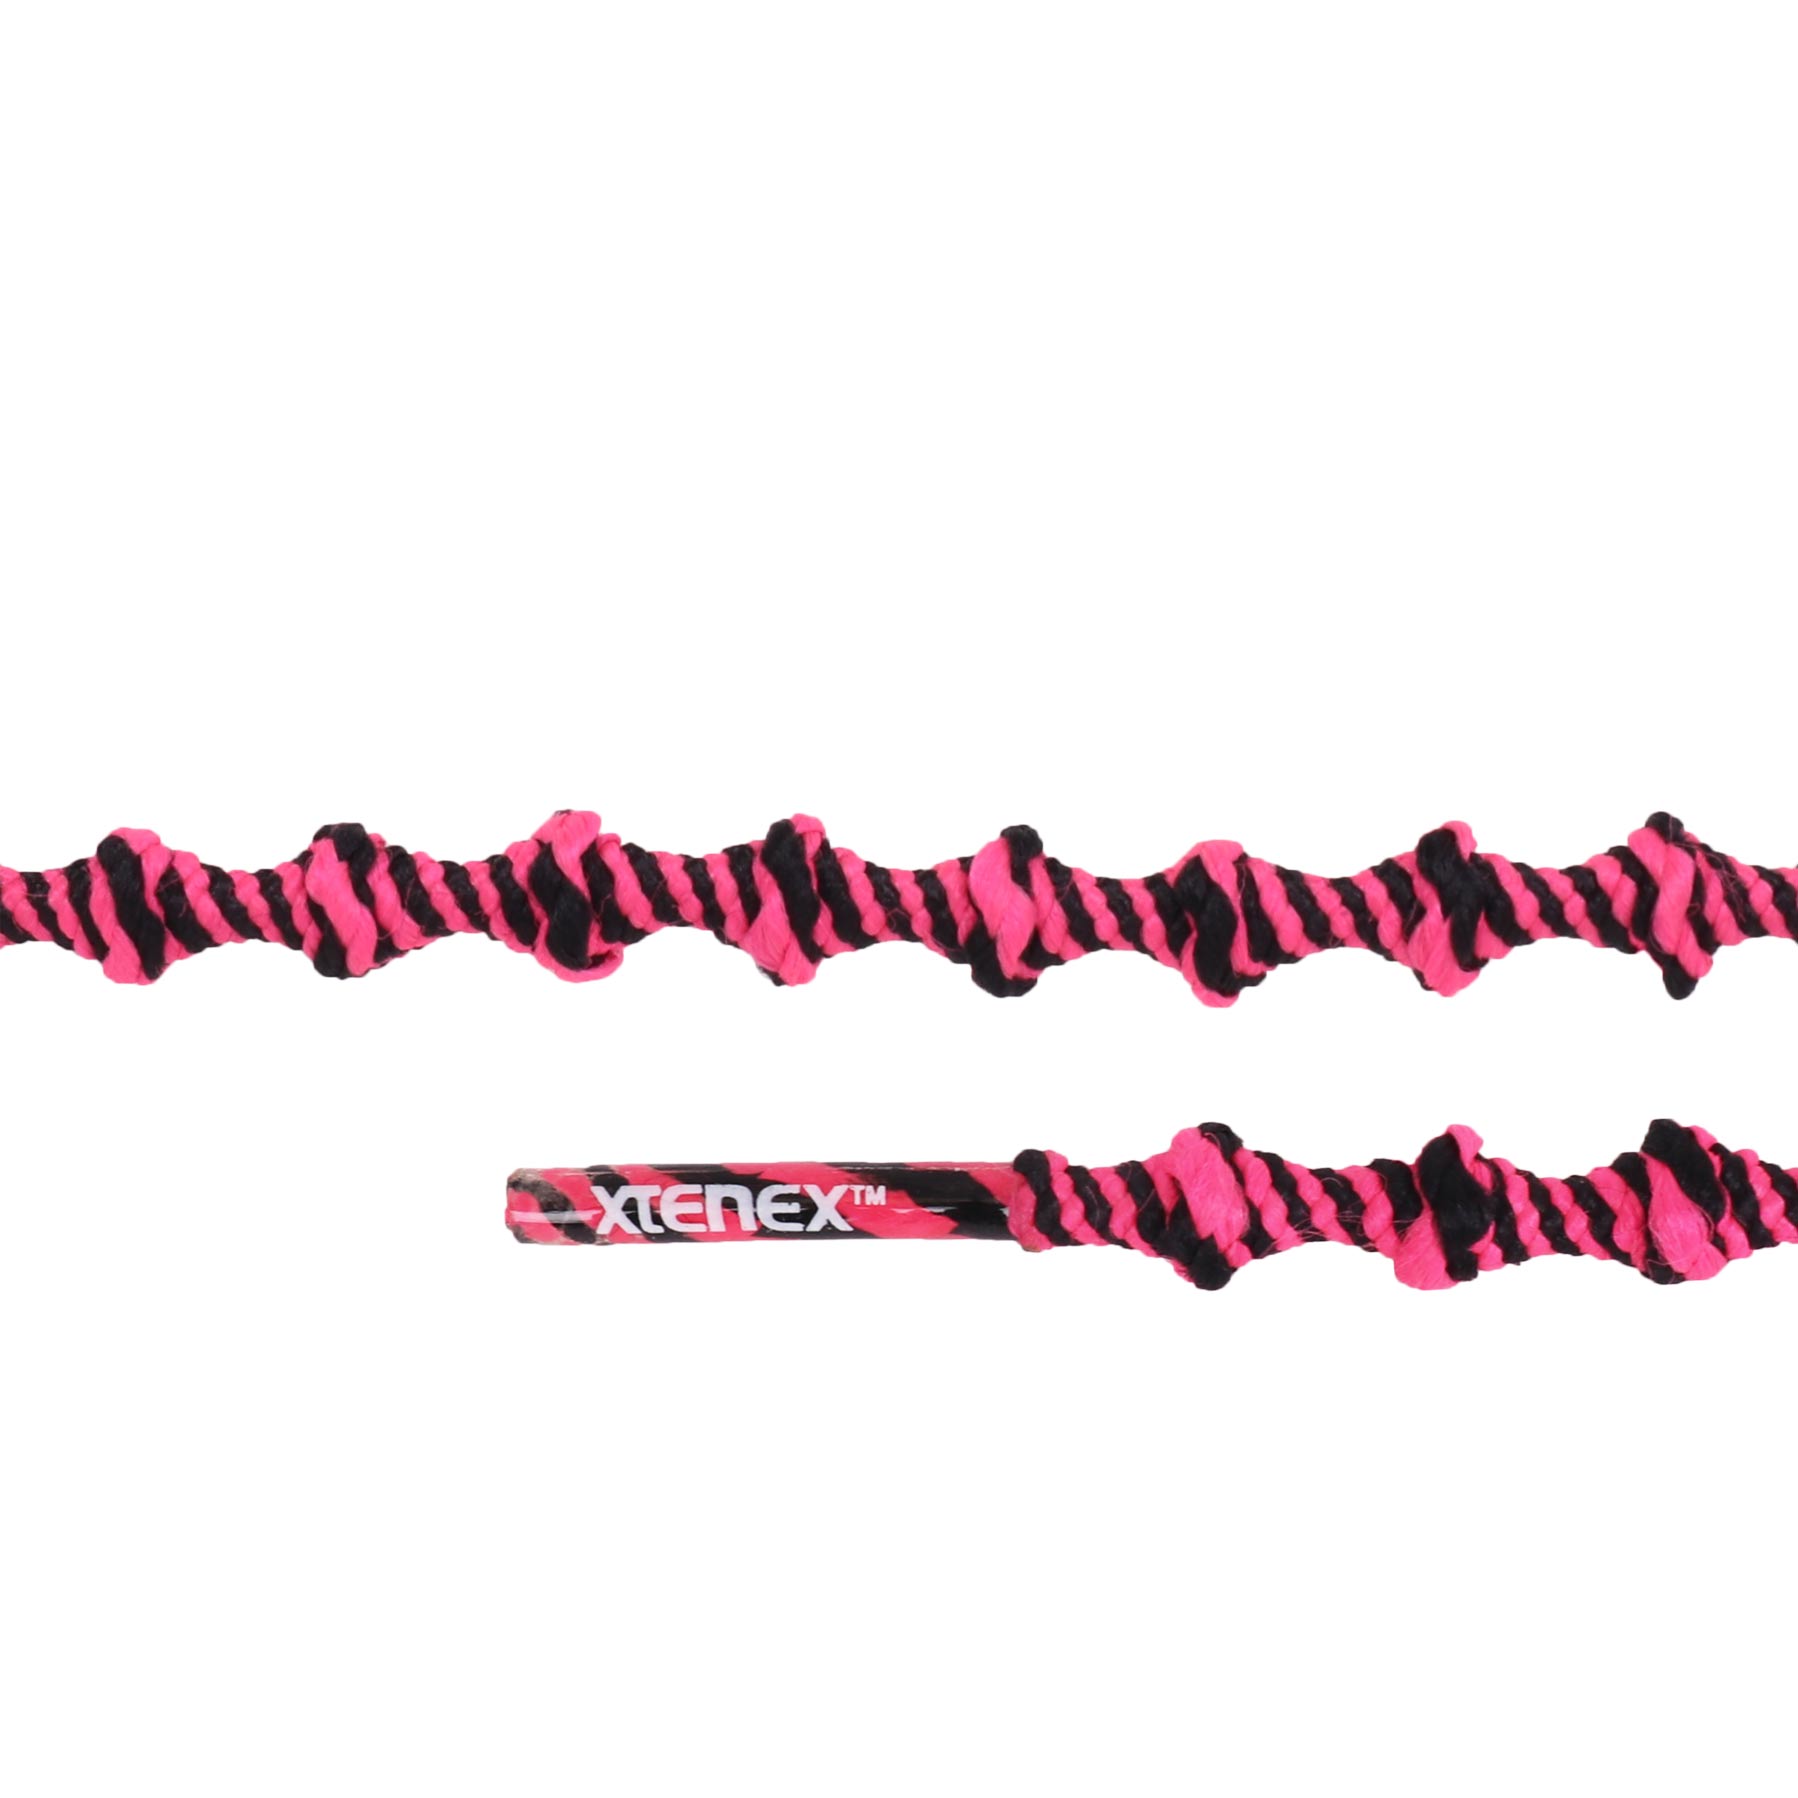 Productfoto van Xtenex Sport Veters - 75cm - roze/zwart